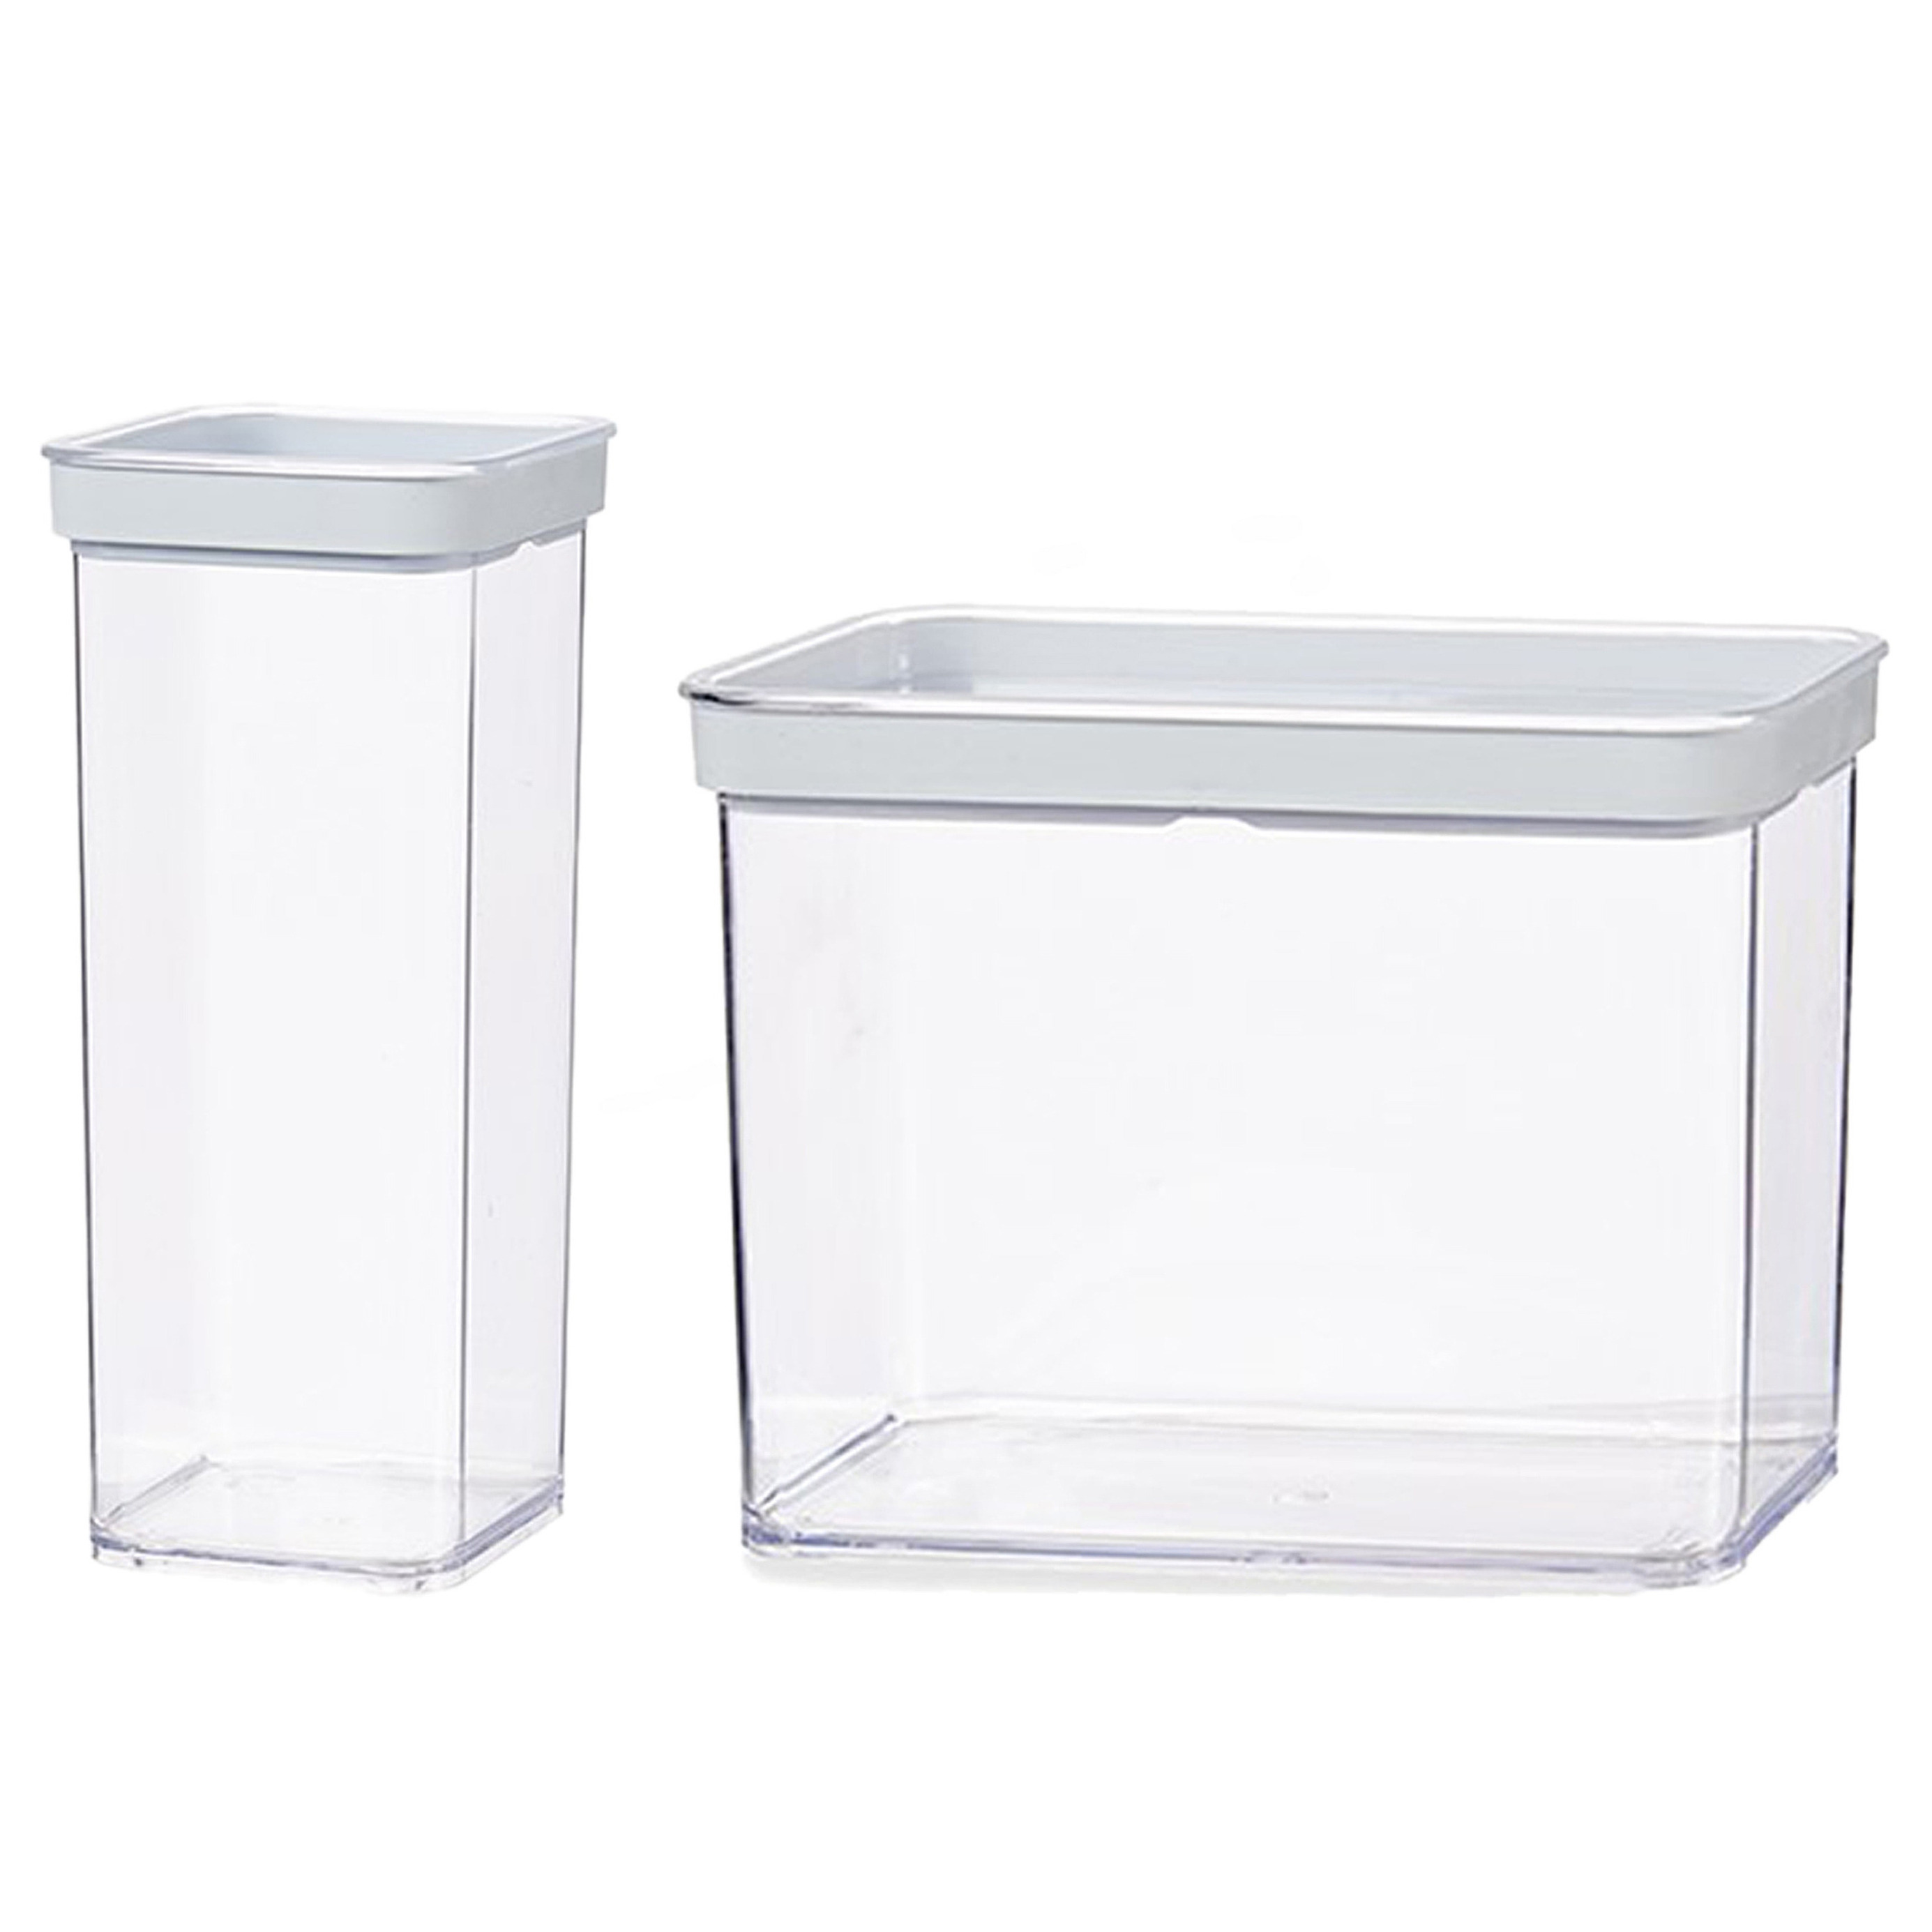 Gondol Plastics 8x stuks keuken voorraad potten/bakjes set met deksel 2.2 en 1.5 liter -